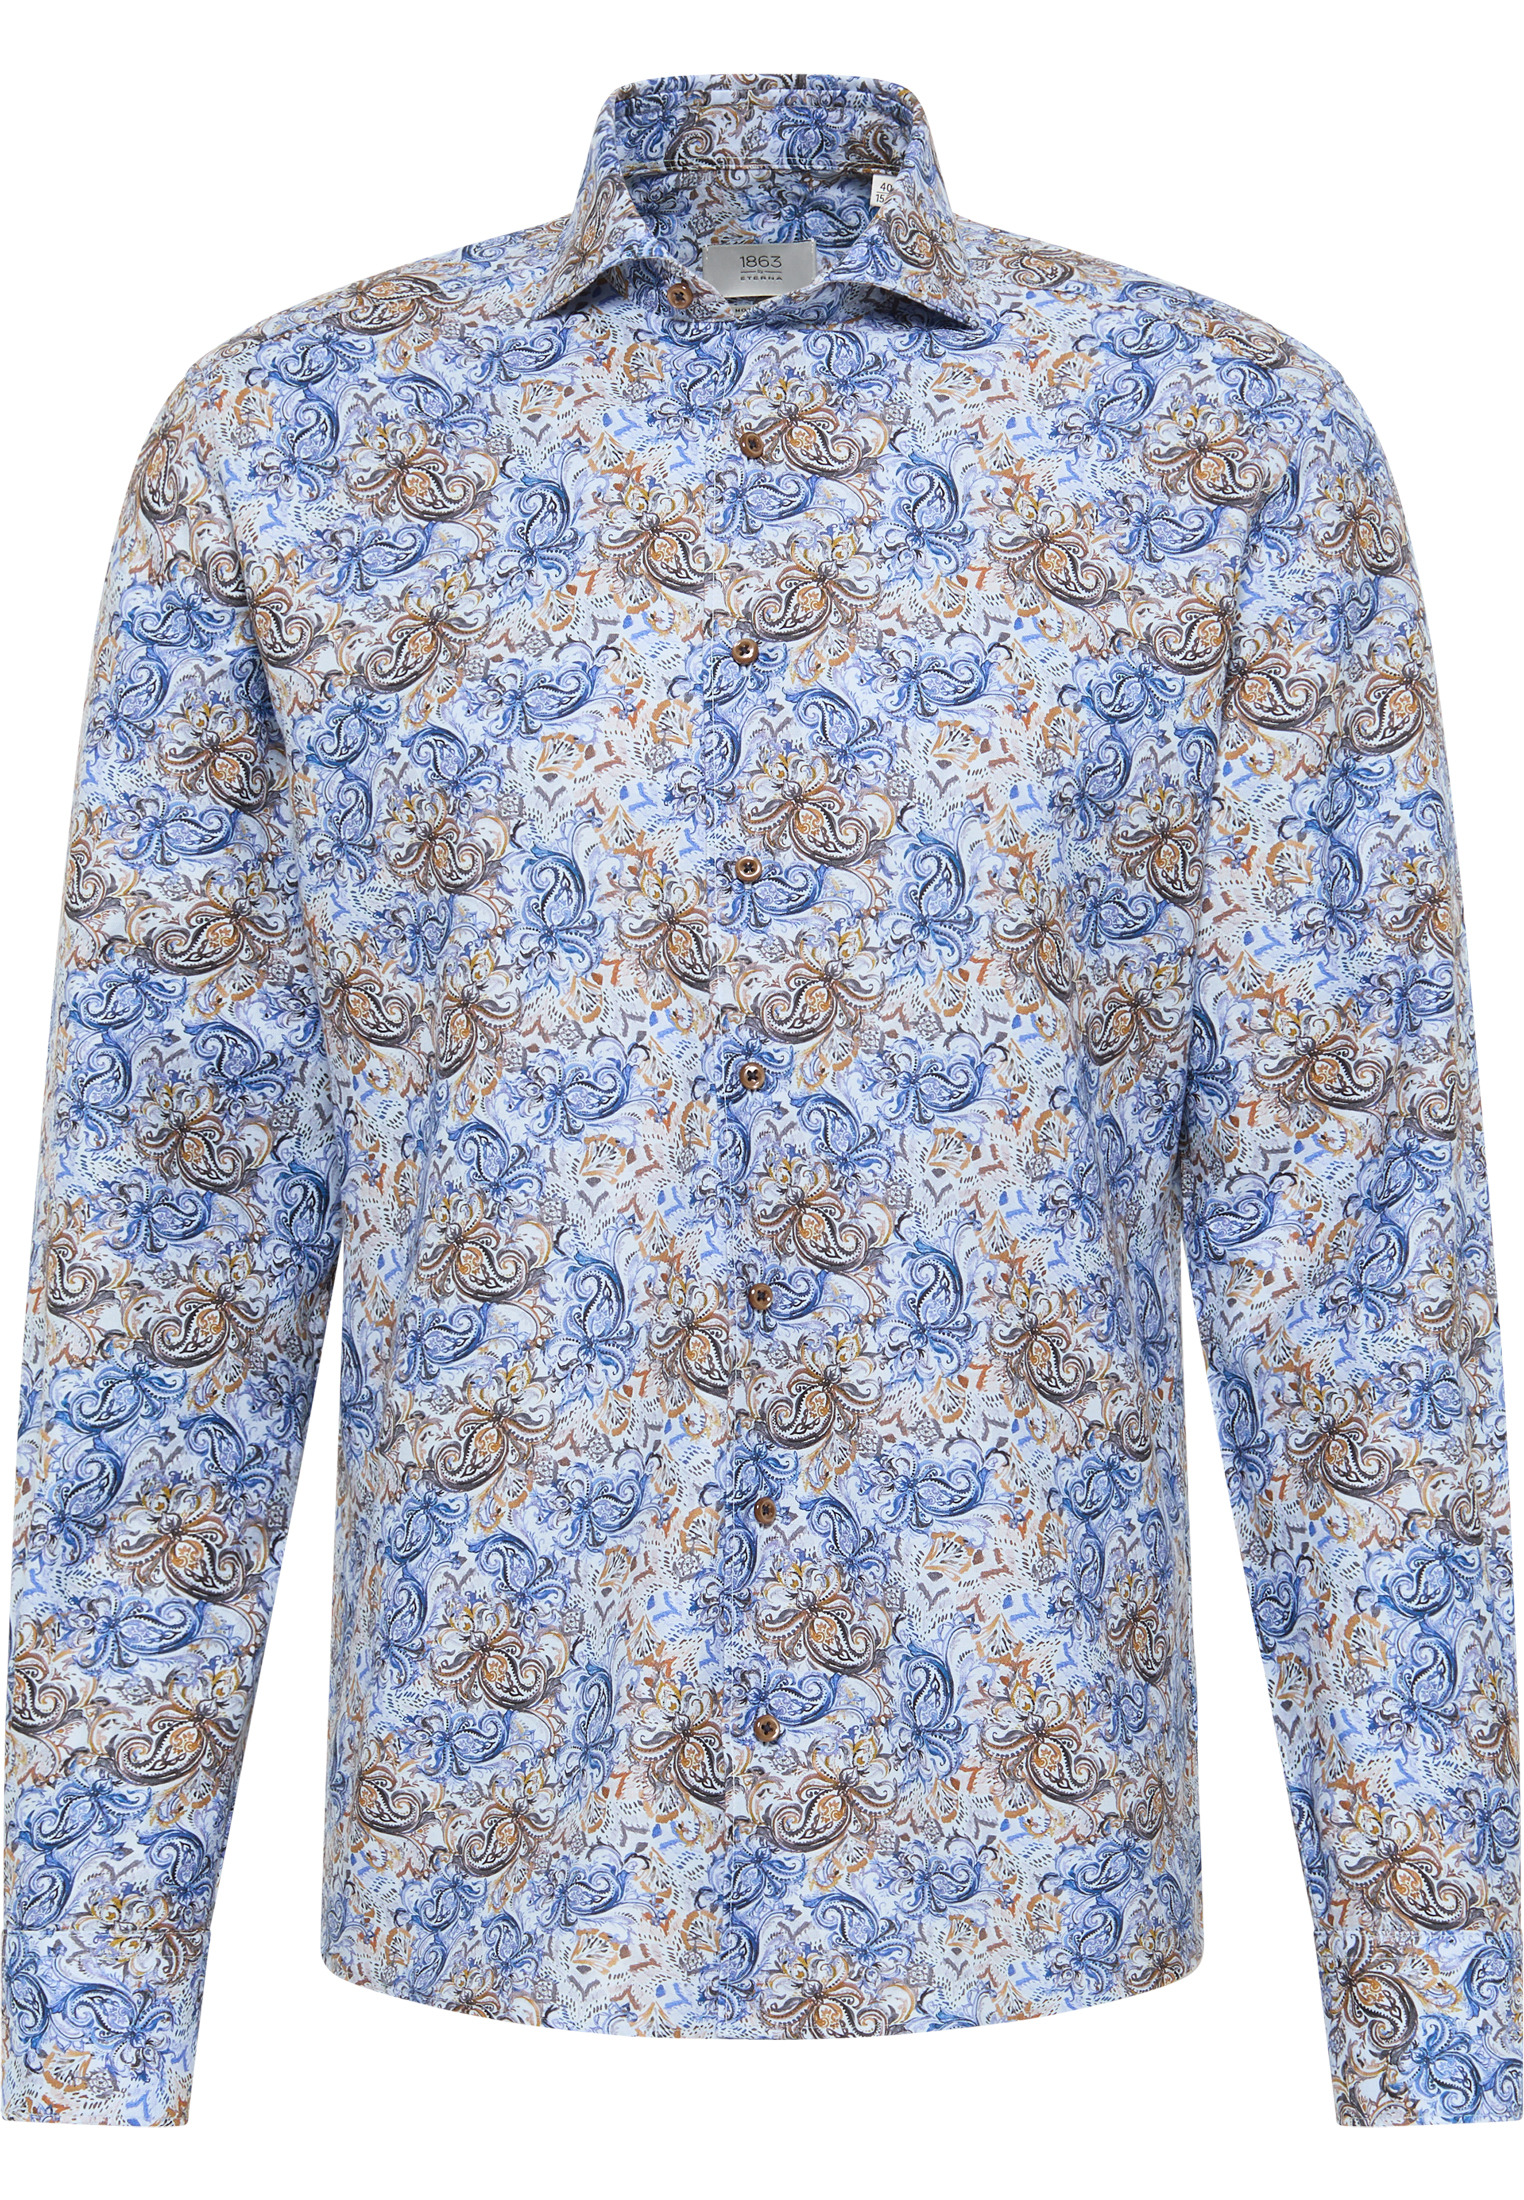 MODERN FIT Overhemd in rookblauw gedrukt